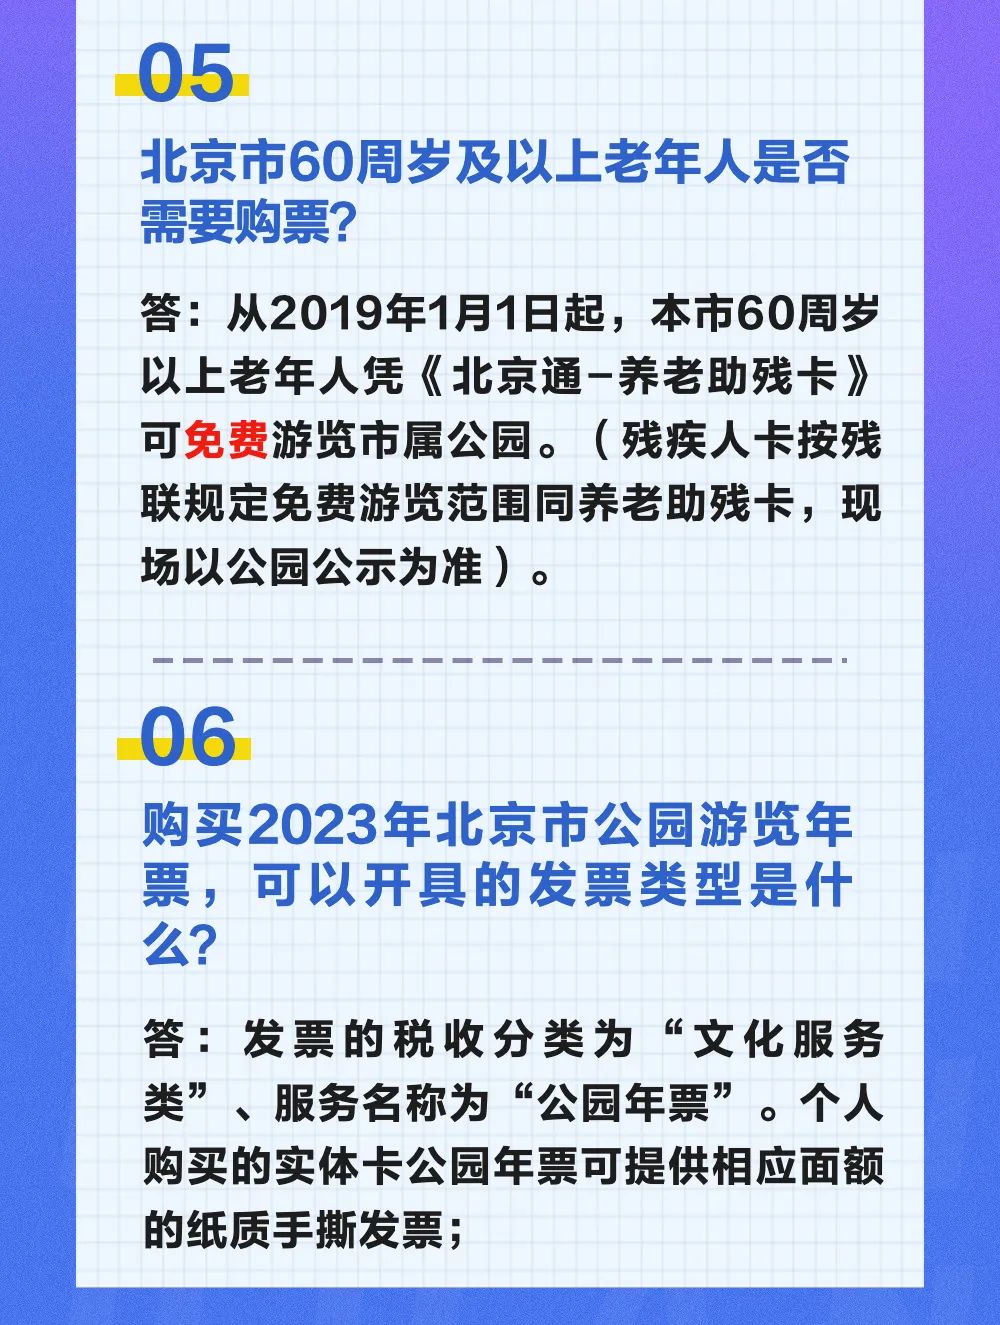 北京公园游览年票有哪些类型？怎么办理？20个问题快问快答